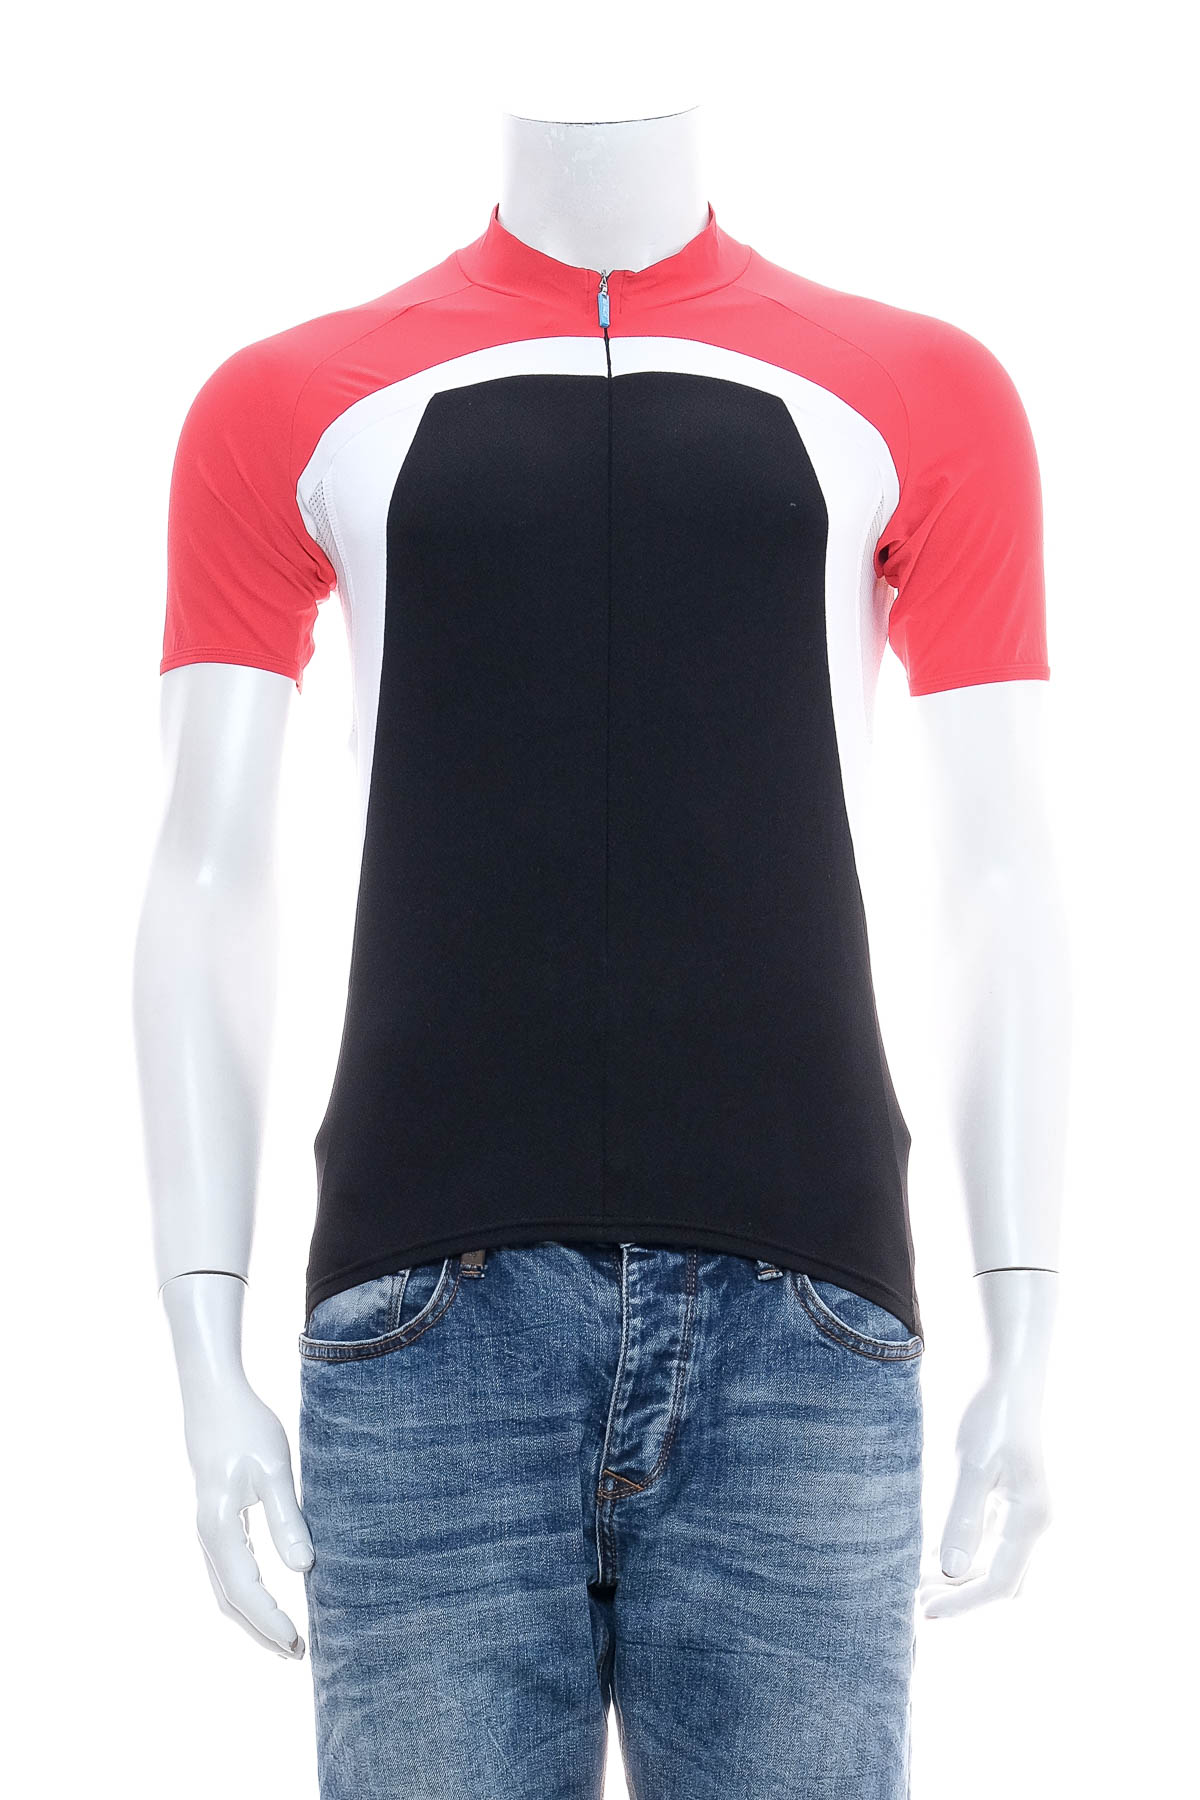 Ανδρικό μπλουζάκι ποδηλασίας - BIORACER - 0